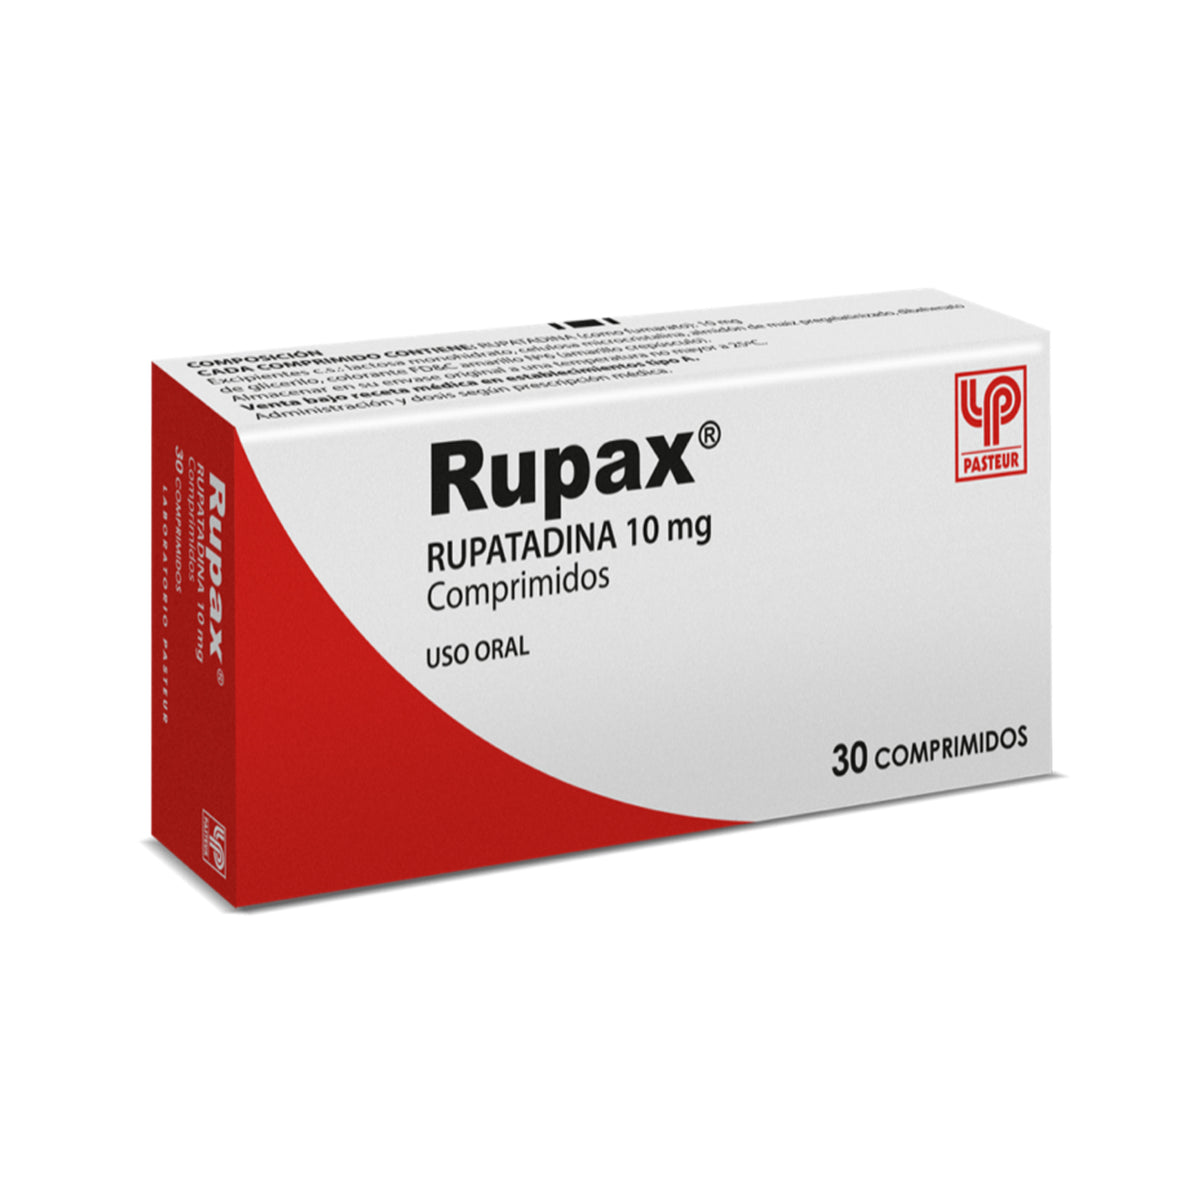 Rupax Comprimidos 10mg